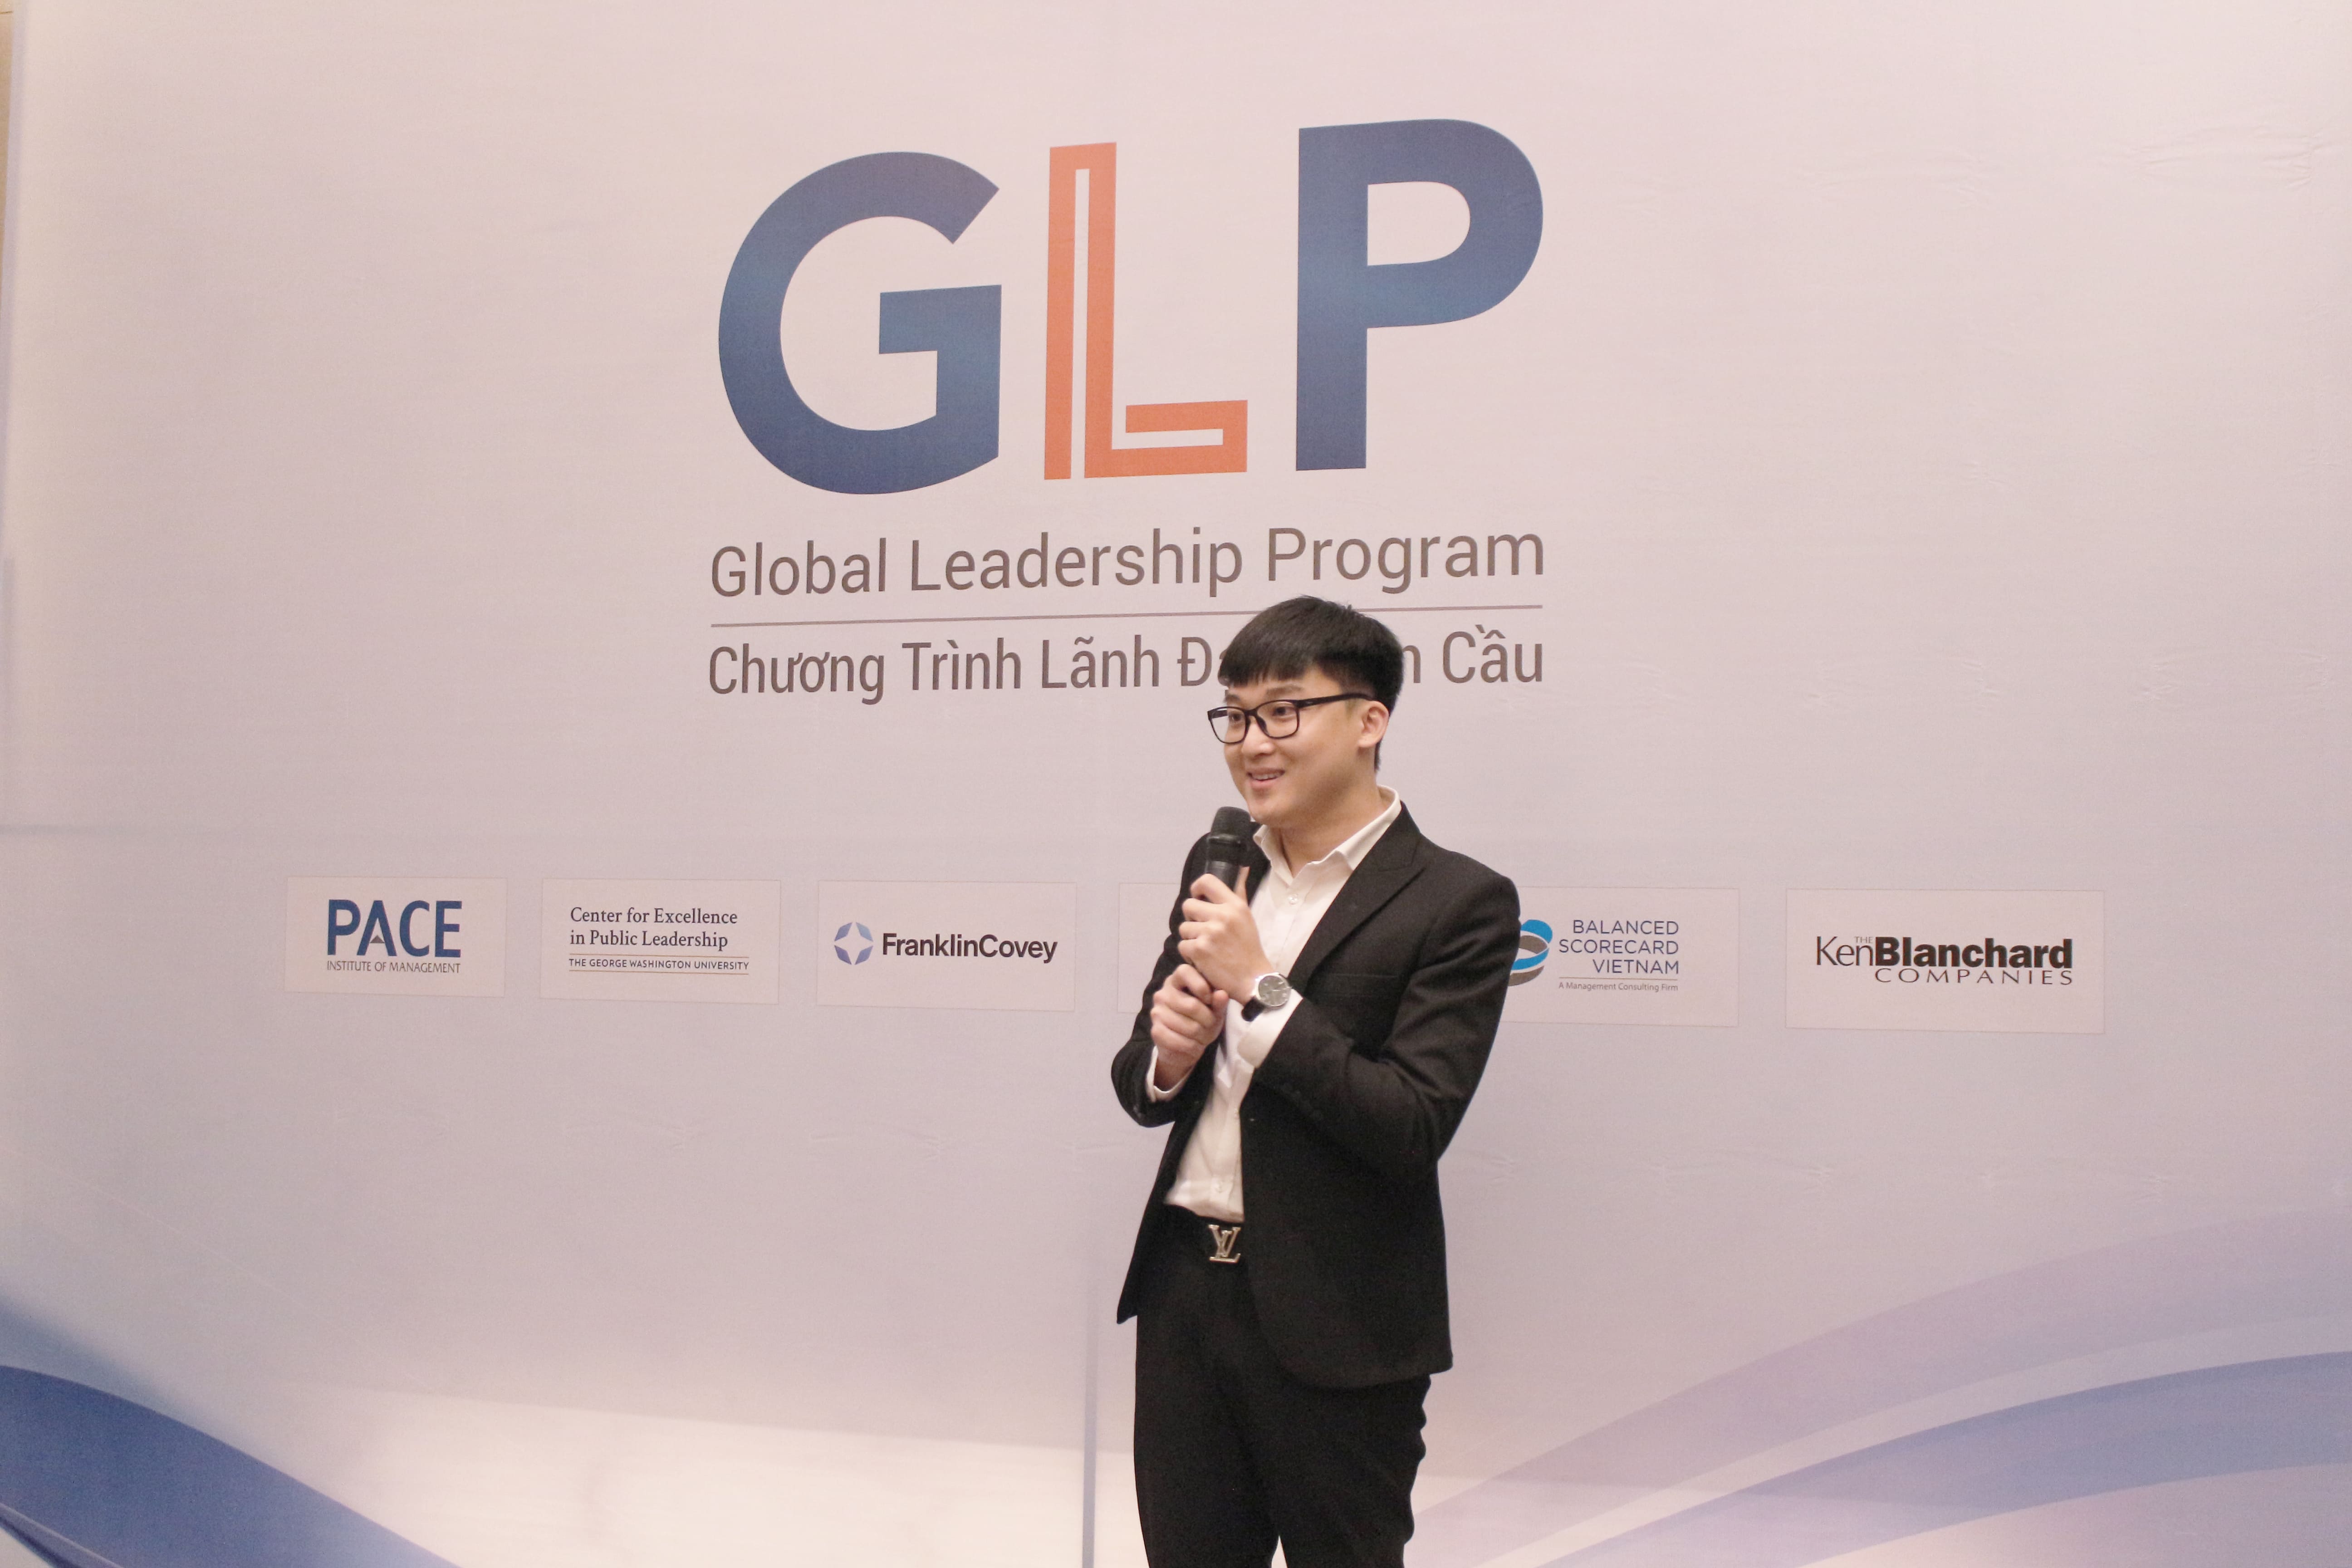 Ông Nguyễn Phú Đức: “GLP mang đến những giá trị vật chất và tinh thần mà không một chương trình nào có thể thay thế”